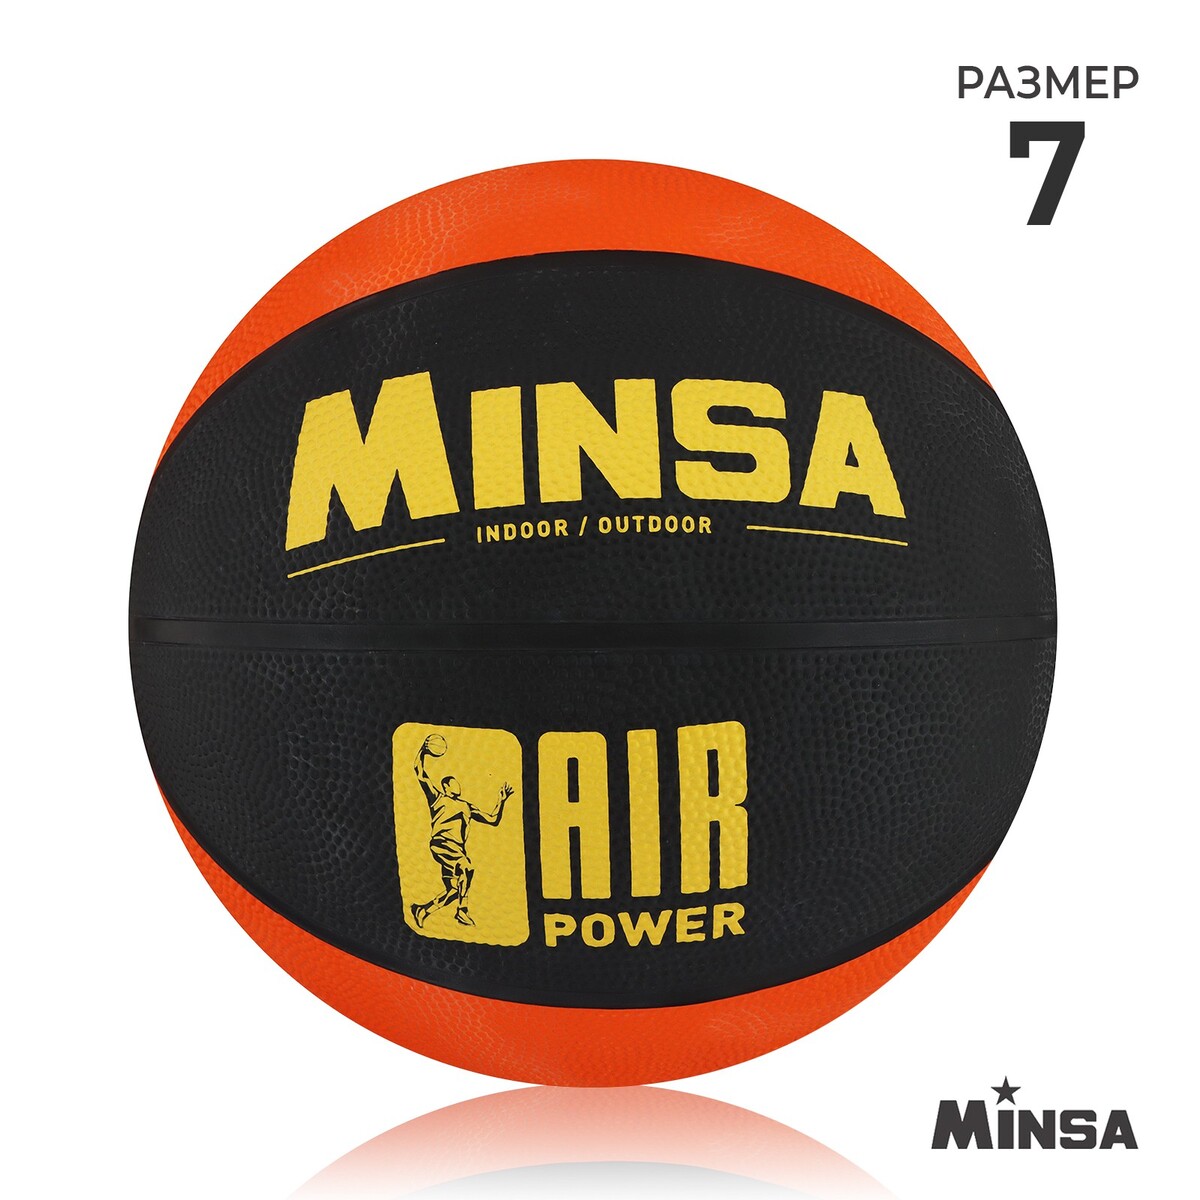 Мяч баскетбольный minsa air power, пвх, клееный, 8 панелей, р. 7 мяч баскетбольный minsa пвх клееный 8 панелей р 5